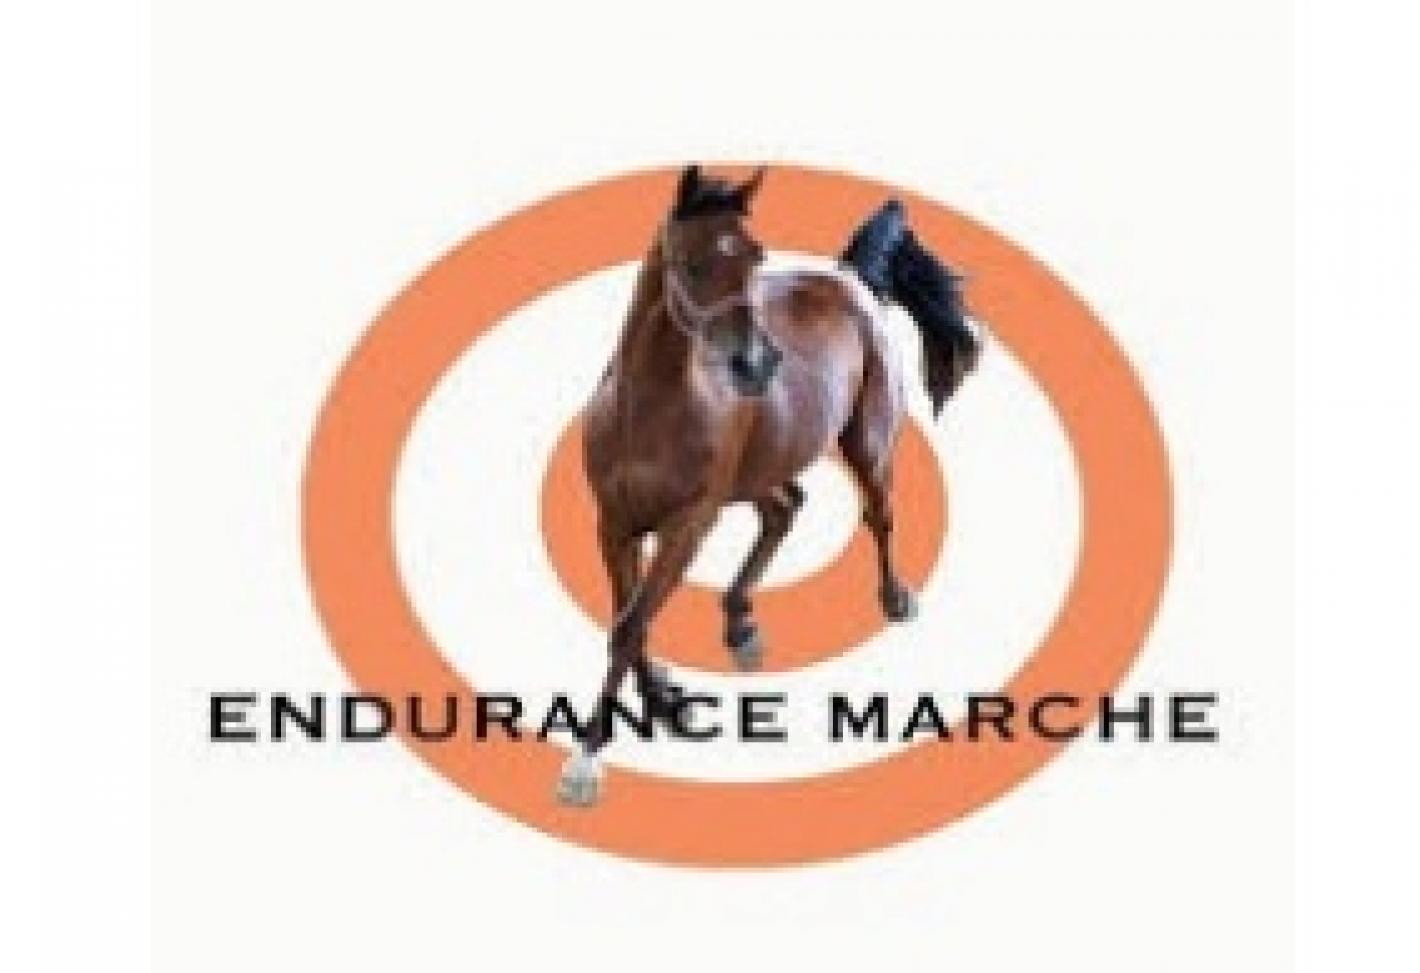 images/marche/Endurance/medium/Endurance_Marche.jpeg